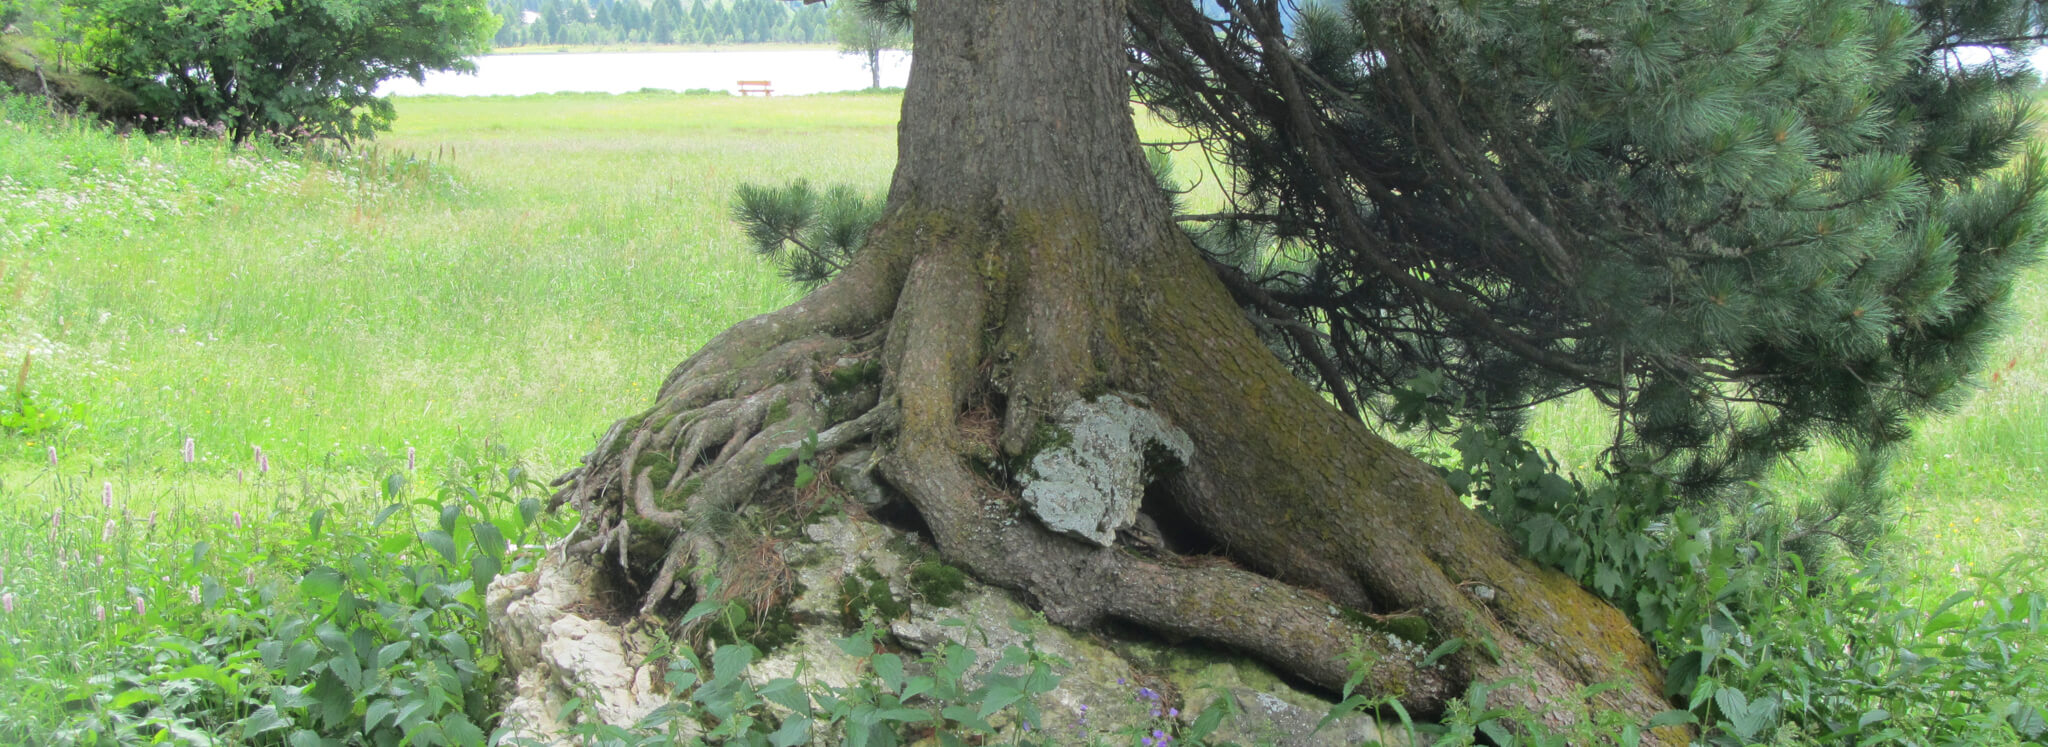 Baum mit Wurzeln Geomantie